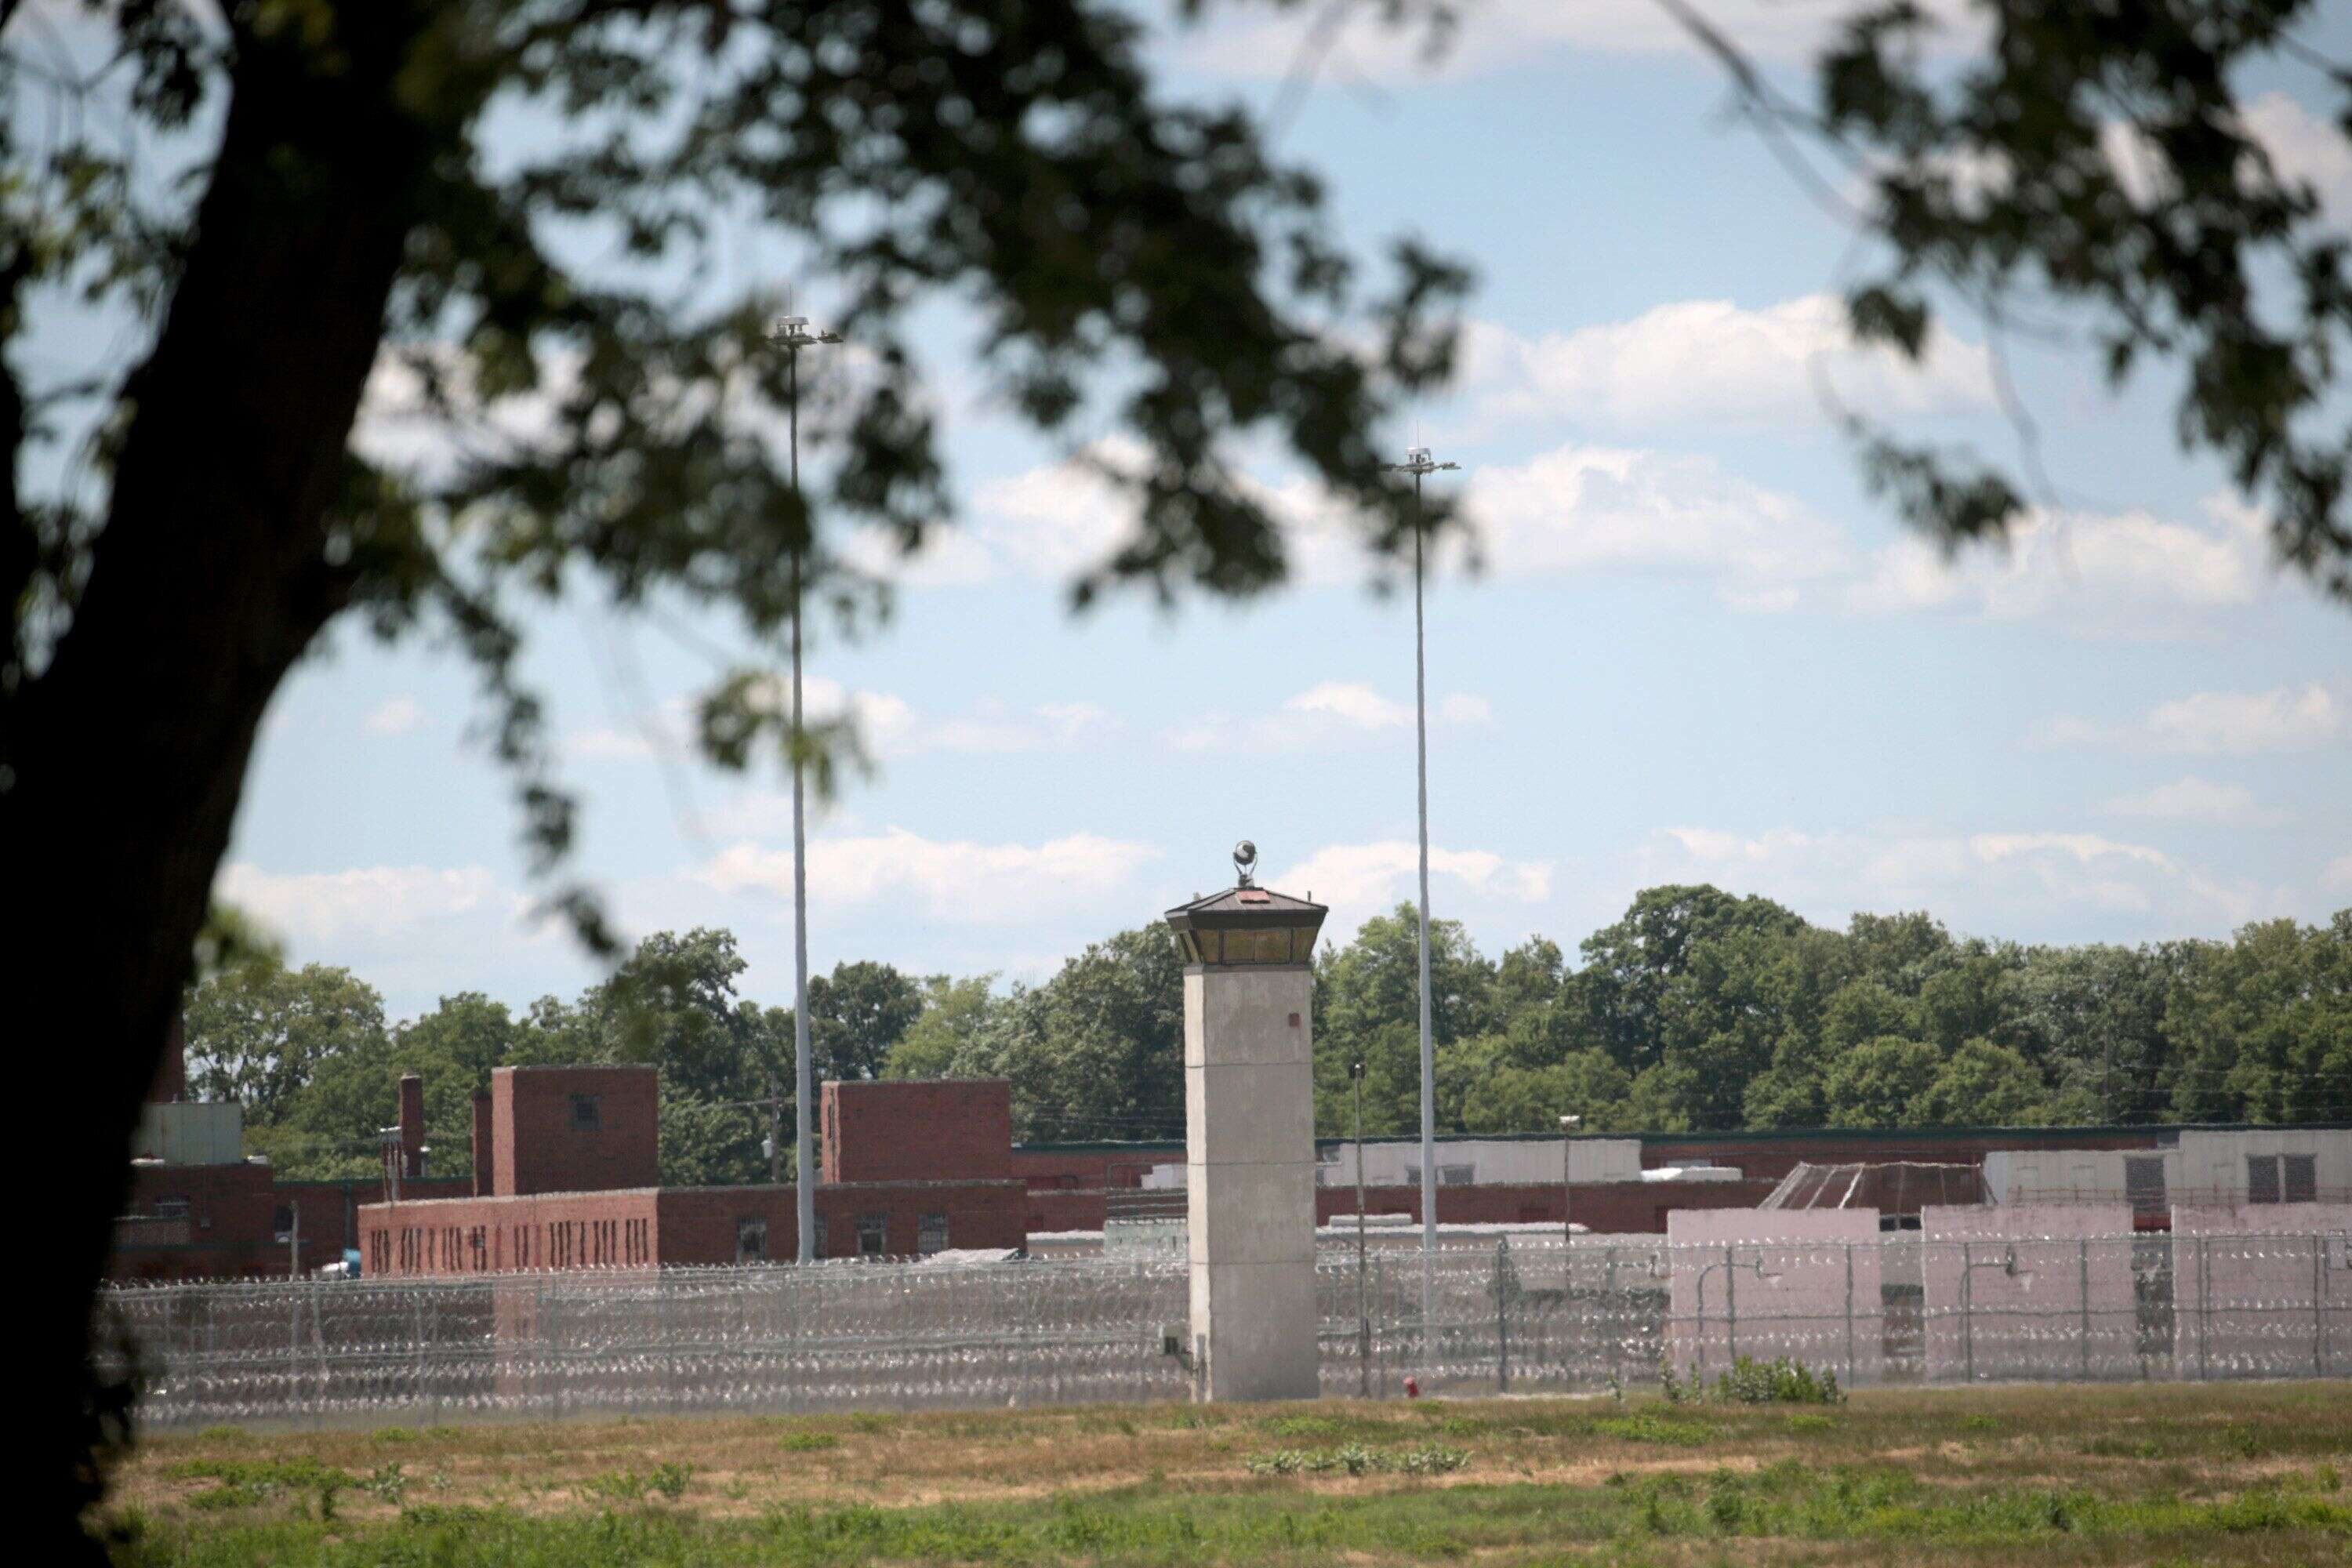 Une vue de la prison où a été exécuté Daniel Lee, à Terre Haute dans l'Indiana aux États-Unis, le 13 juillet 2020.